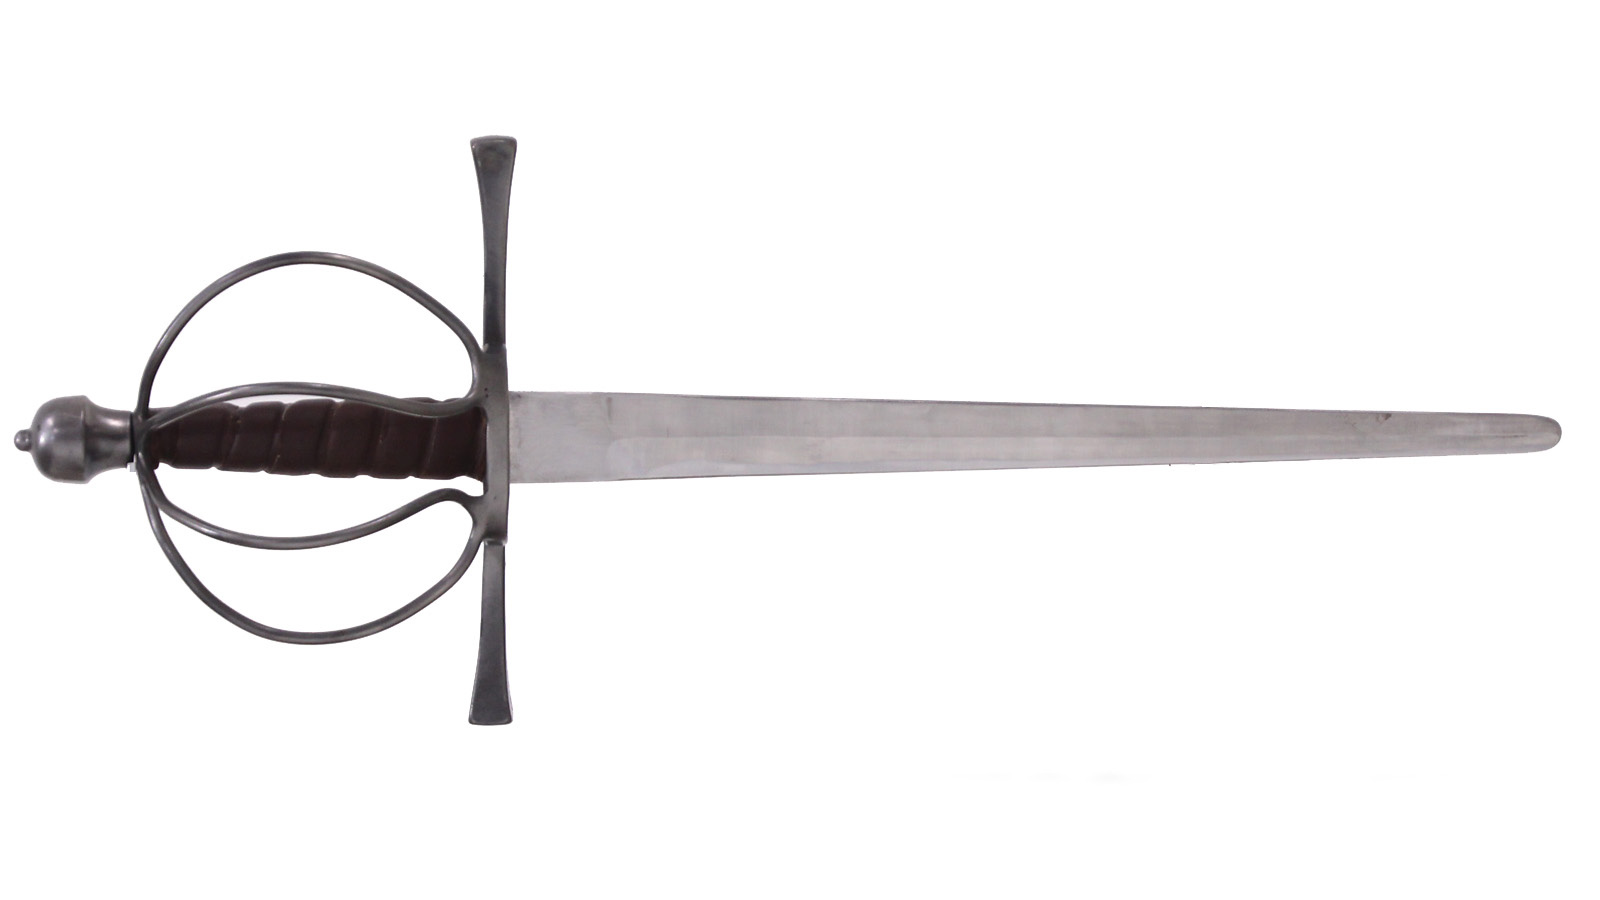 Parrying dagger skeleton shaped